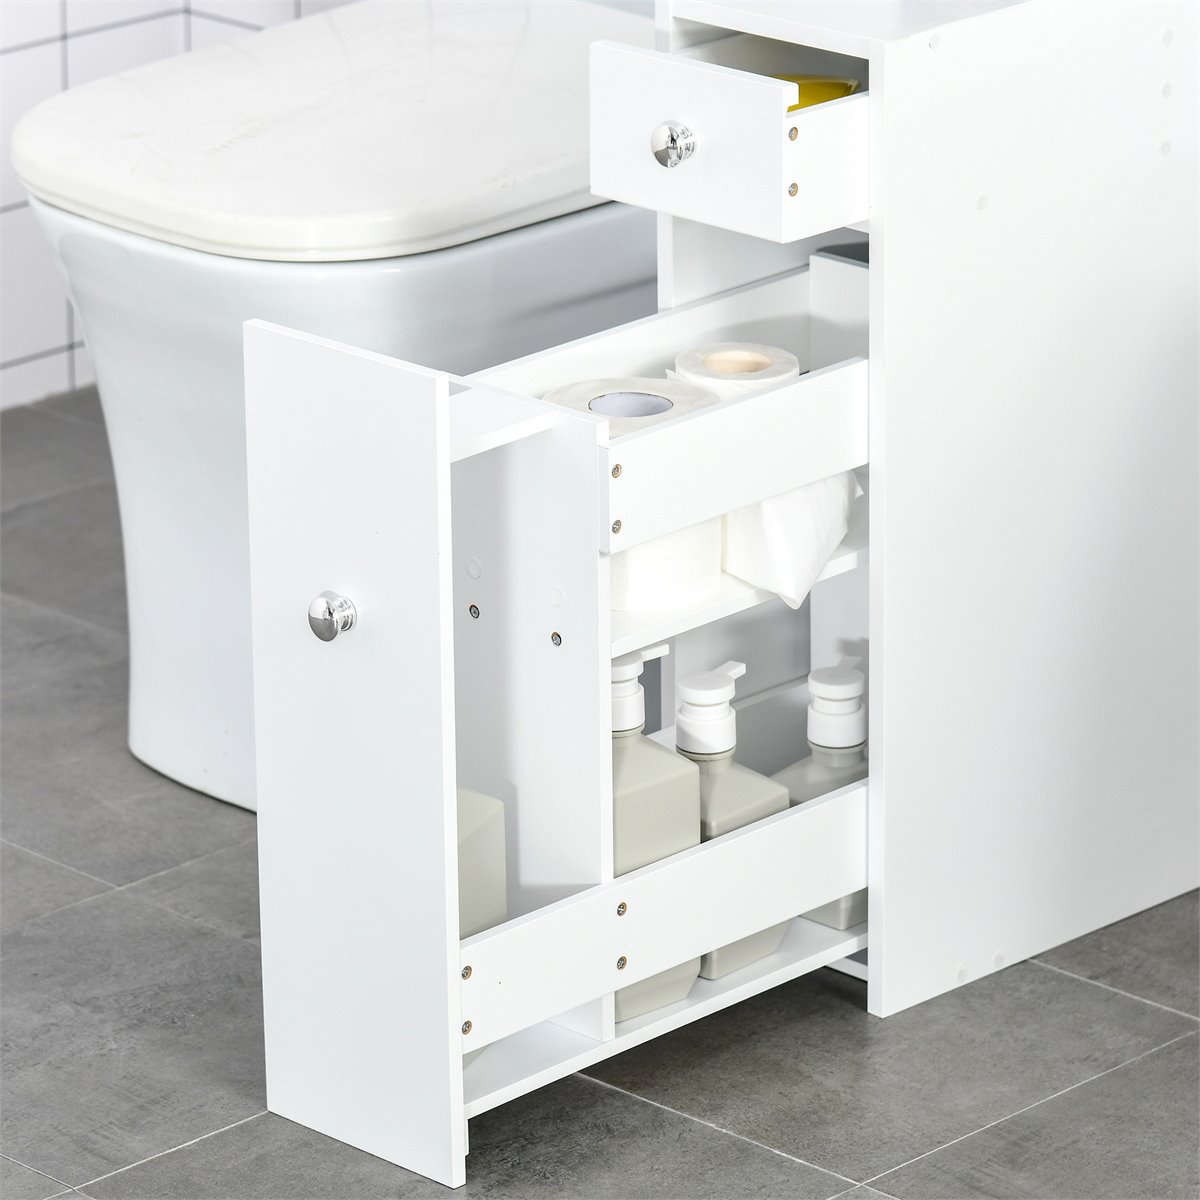 Conforama tiene un armario estrecho que permite aprovechar rincones en  desuso en cocinas y baños pequeños